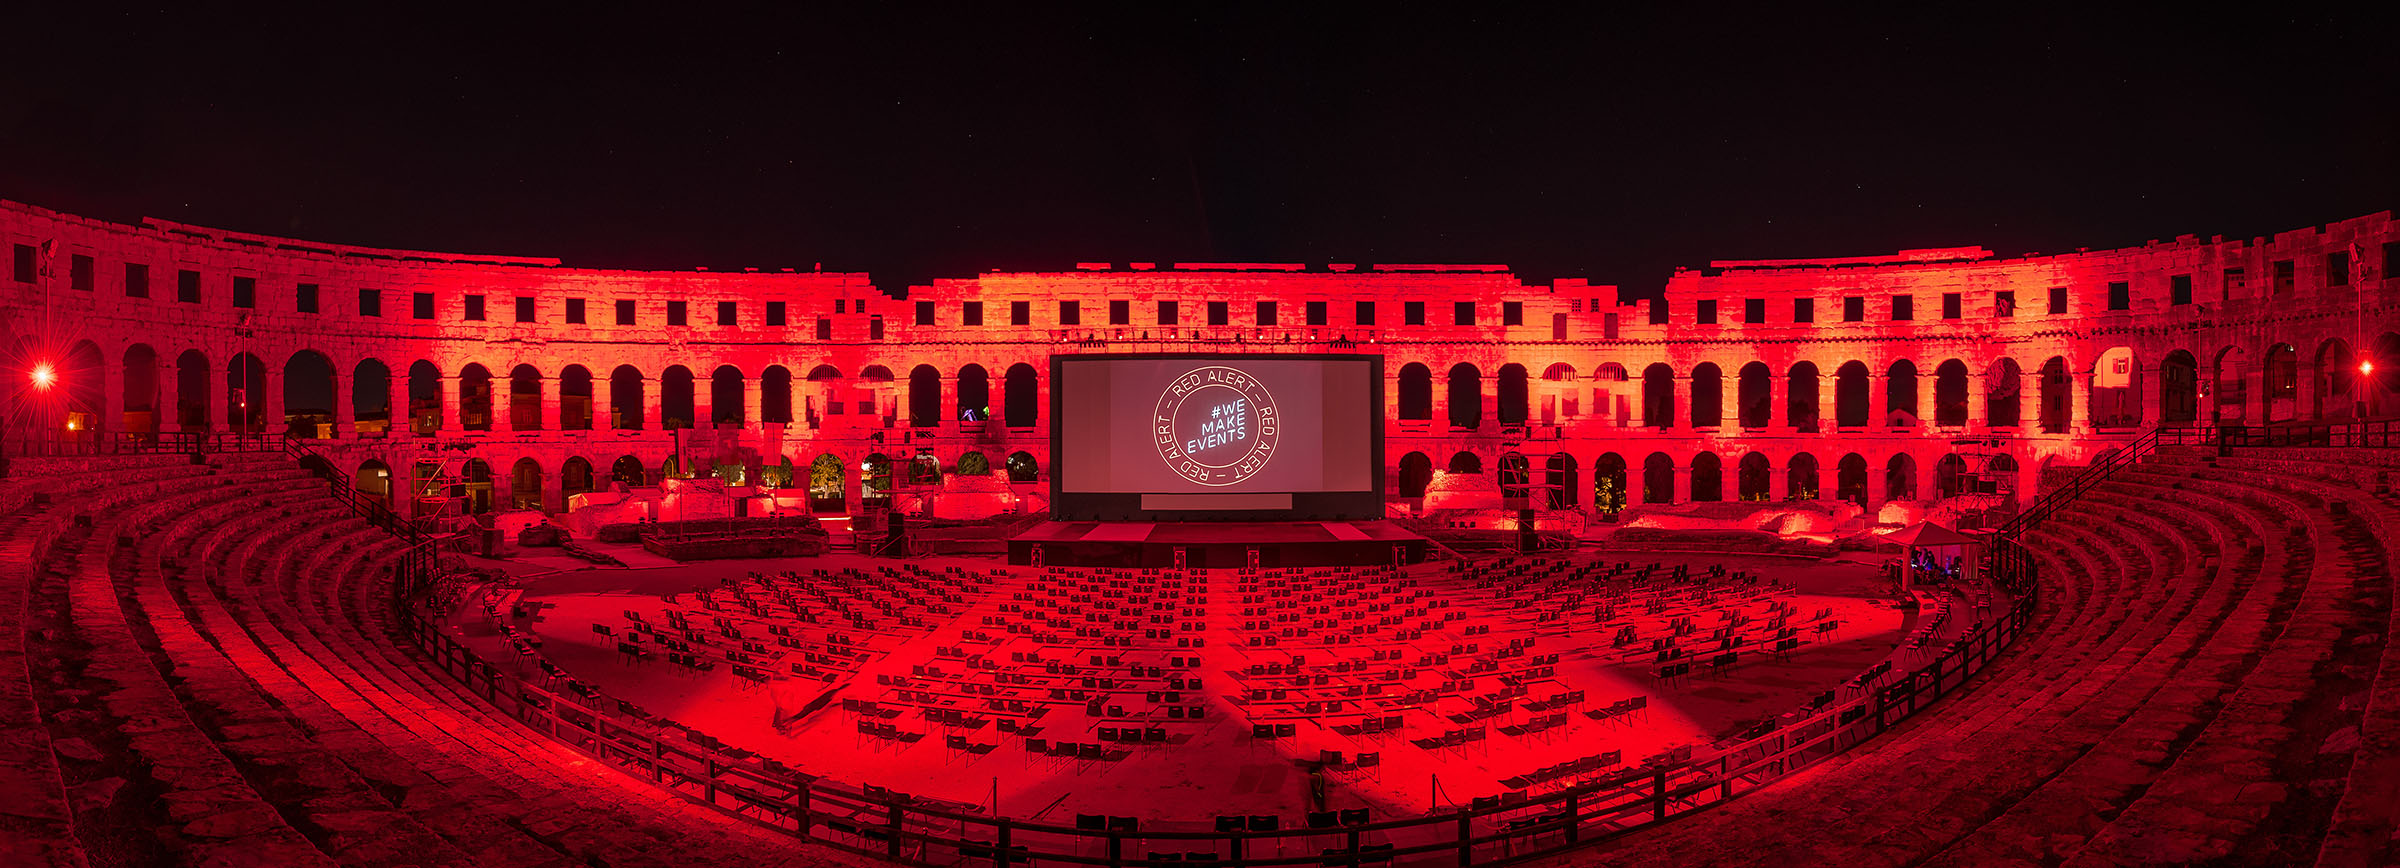 Die Pula Arena in Kroatien wurde am Abend des 01. September 2020 für die #WeMakeEvents-Kampagne rot erleuchtet. (Fotos: Loris Zupanc)